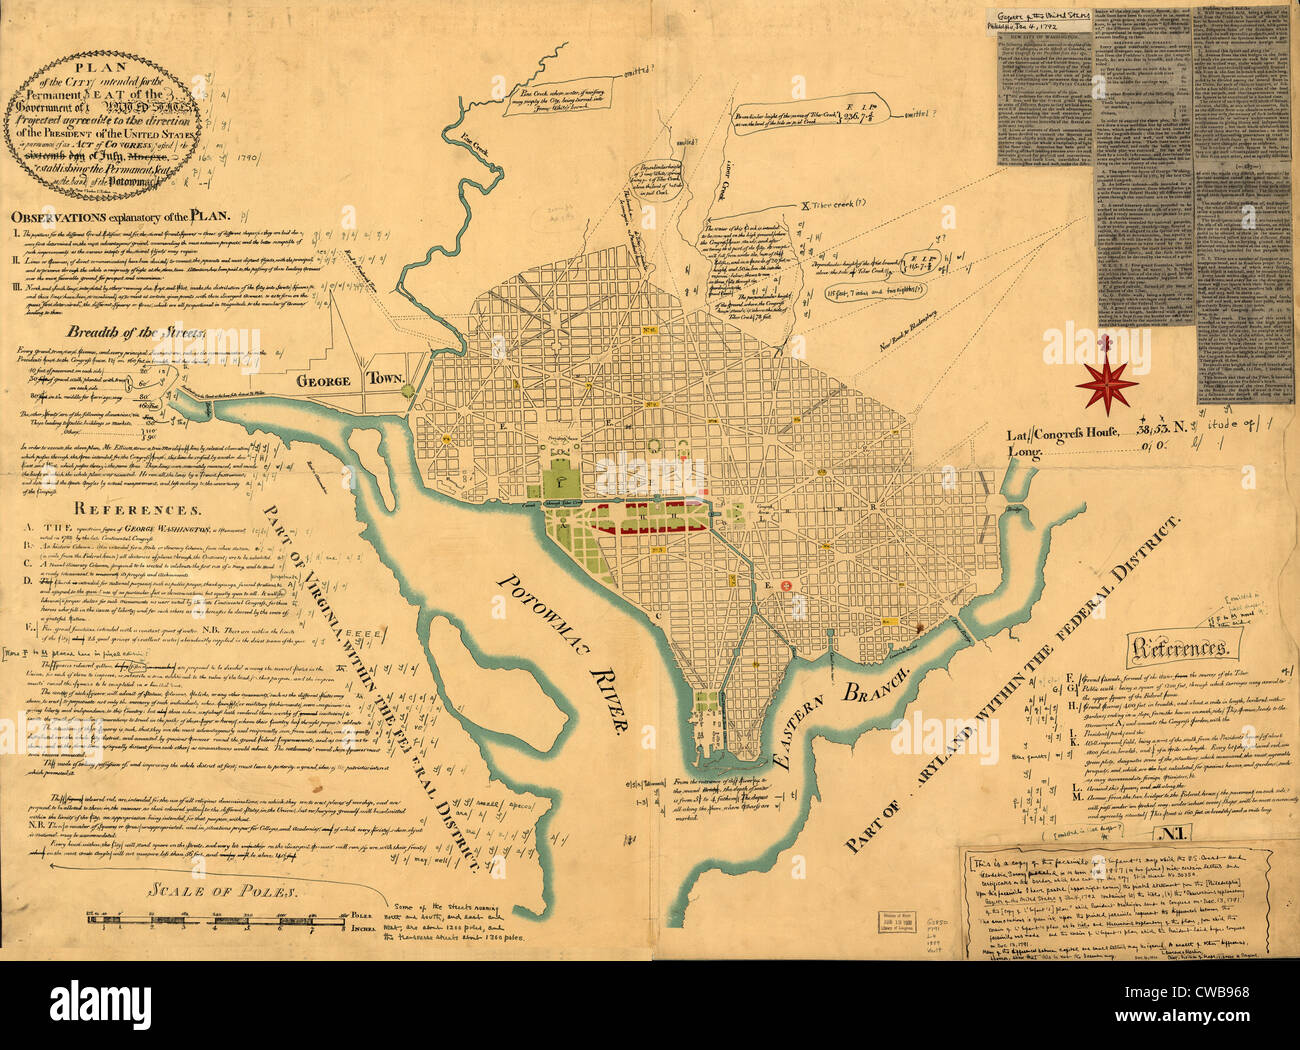 Washington, D.C. Carte montrant le plan d'origine de ce qui allait devenir le District de Columbia. Par Pierre Charles L'enfant. 1791 Banque D'Images